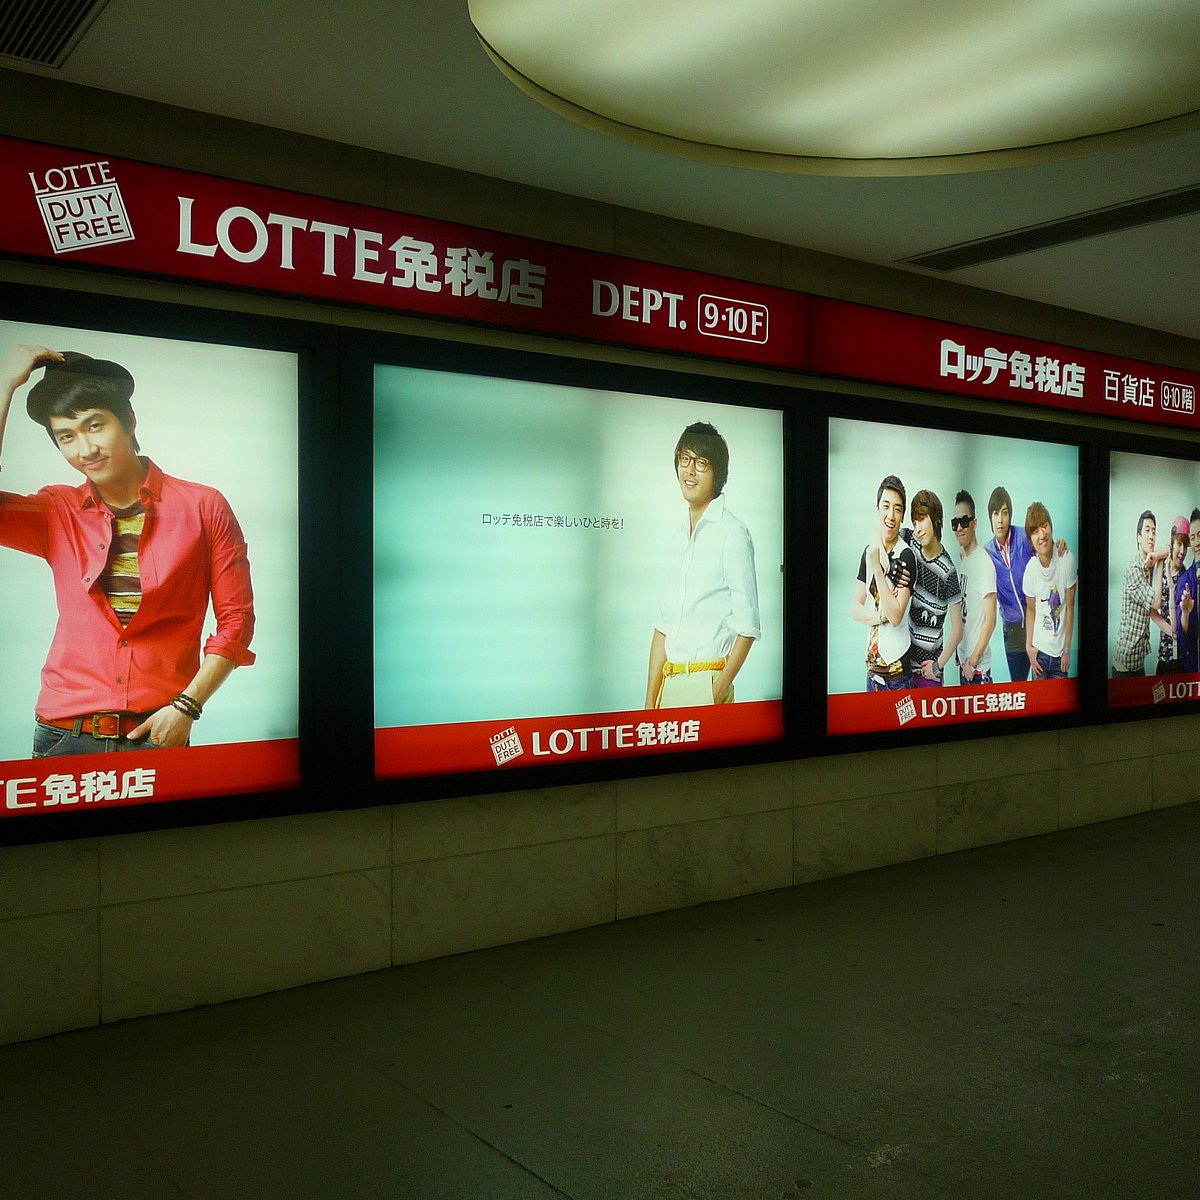 Louis Vuitton Lotte Seoul Downtown Men store, Korea